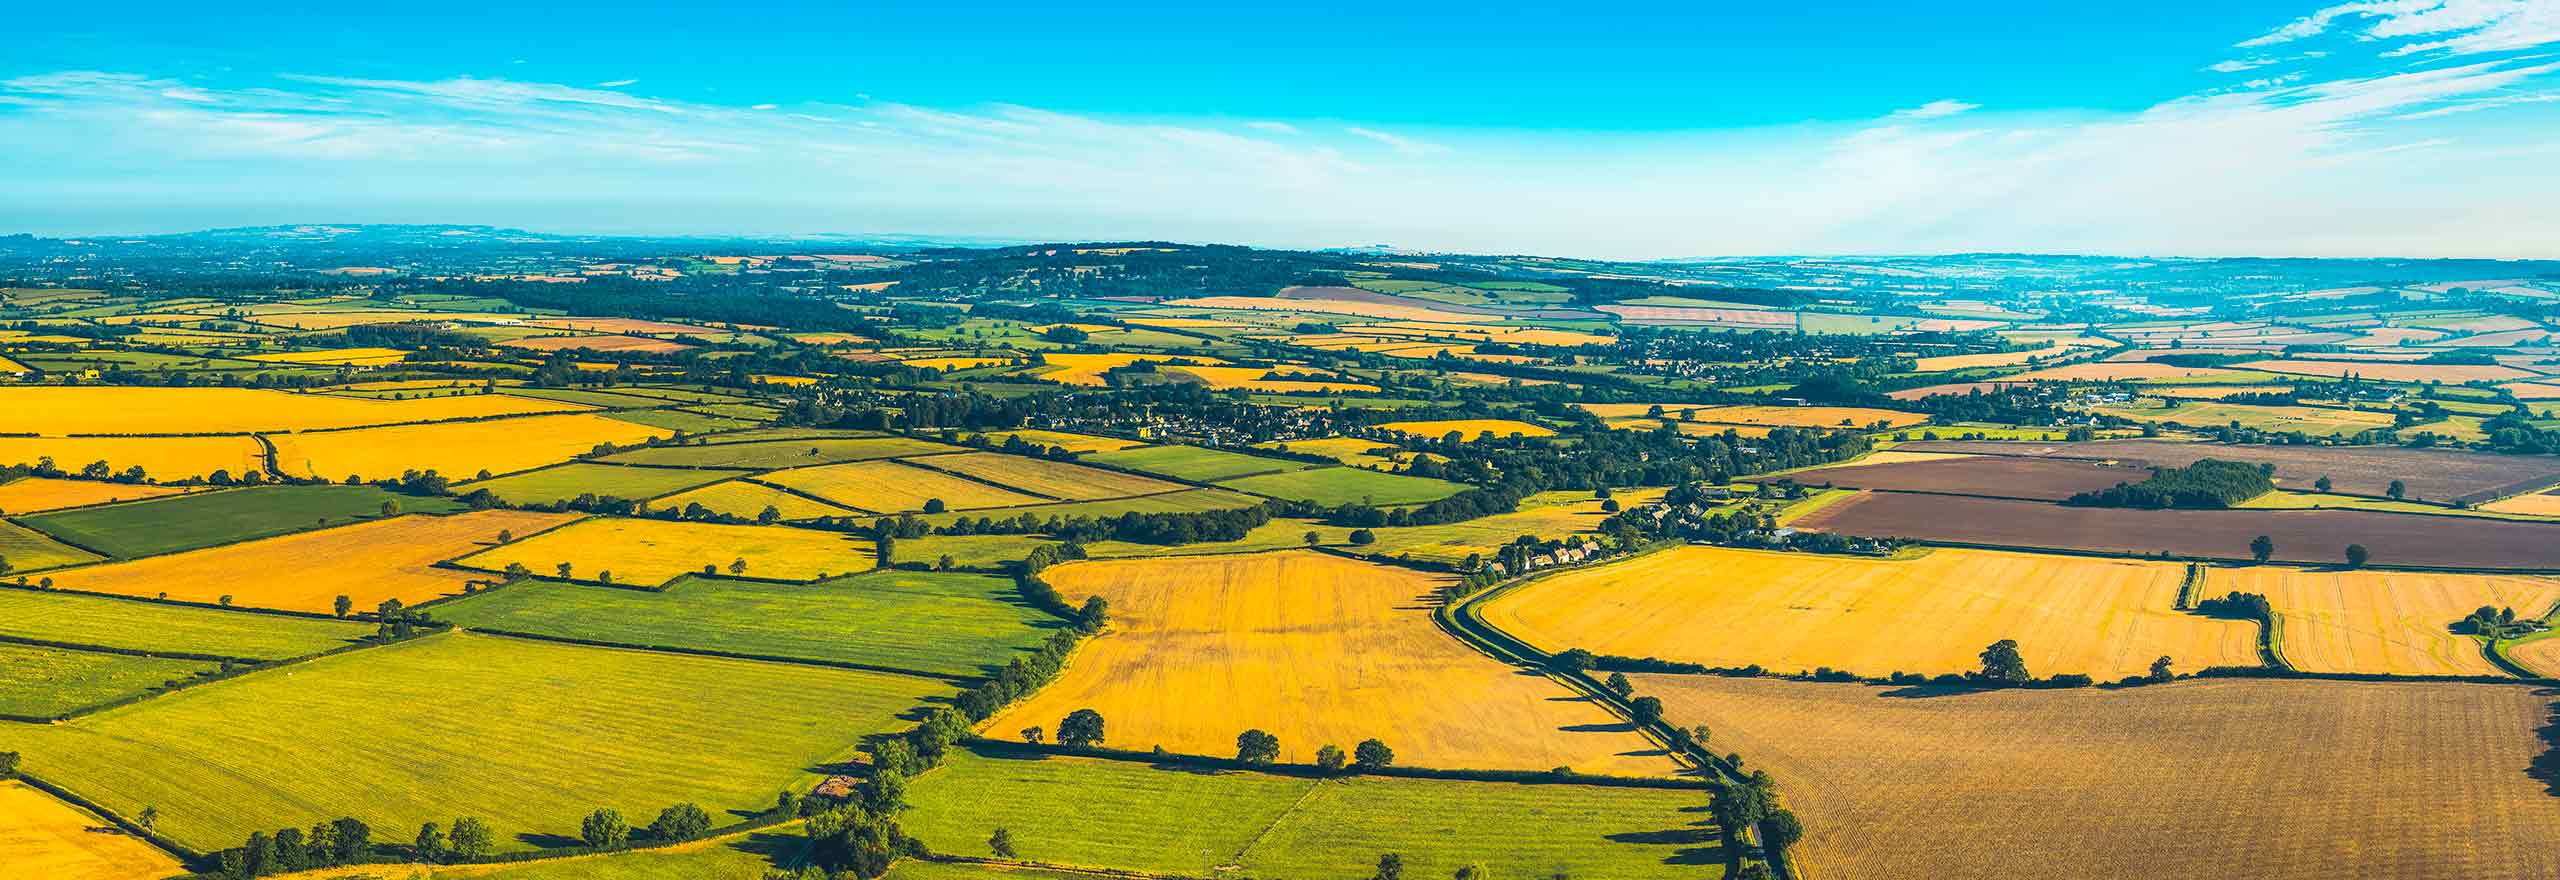 Vista aerea di un paesaggio rurale